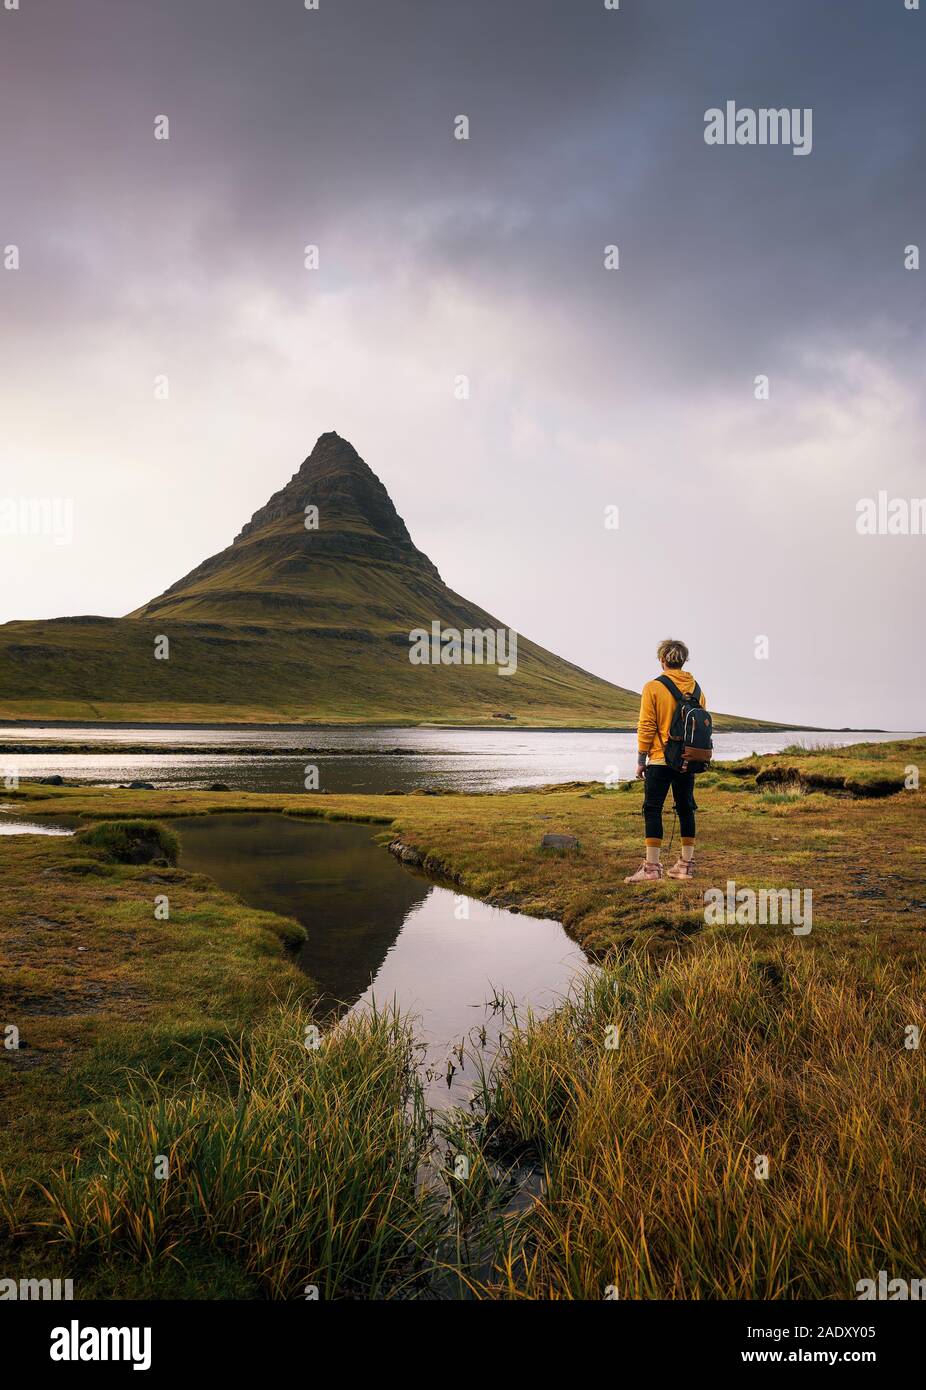 Junge Wanderer mit Rucksack schaut die Kirkjufell Berg Islands. Dieser 463 m hohe Berg liegt an der Nordküste Islands Snæfells entfernt Stockfoto